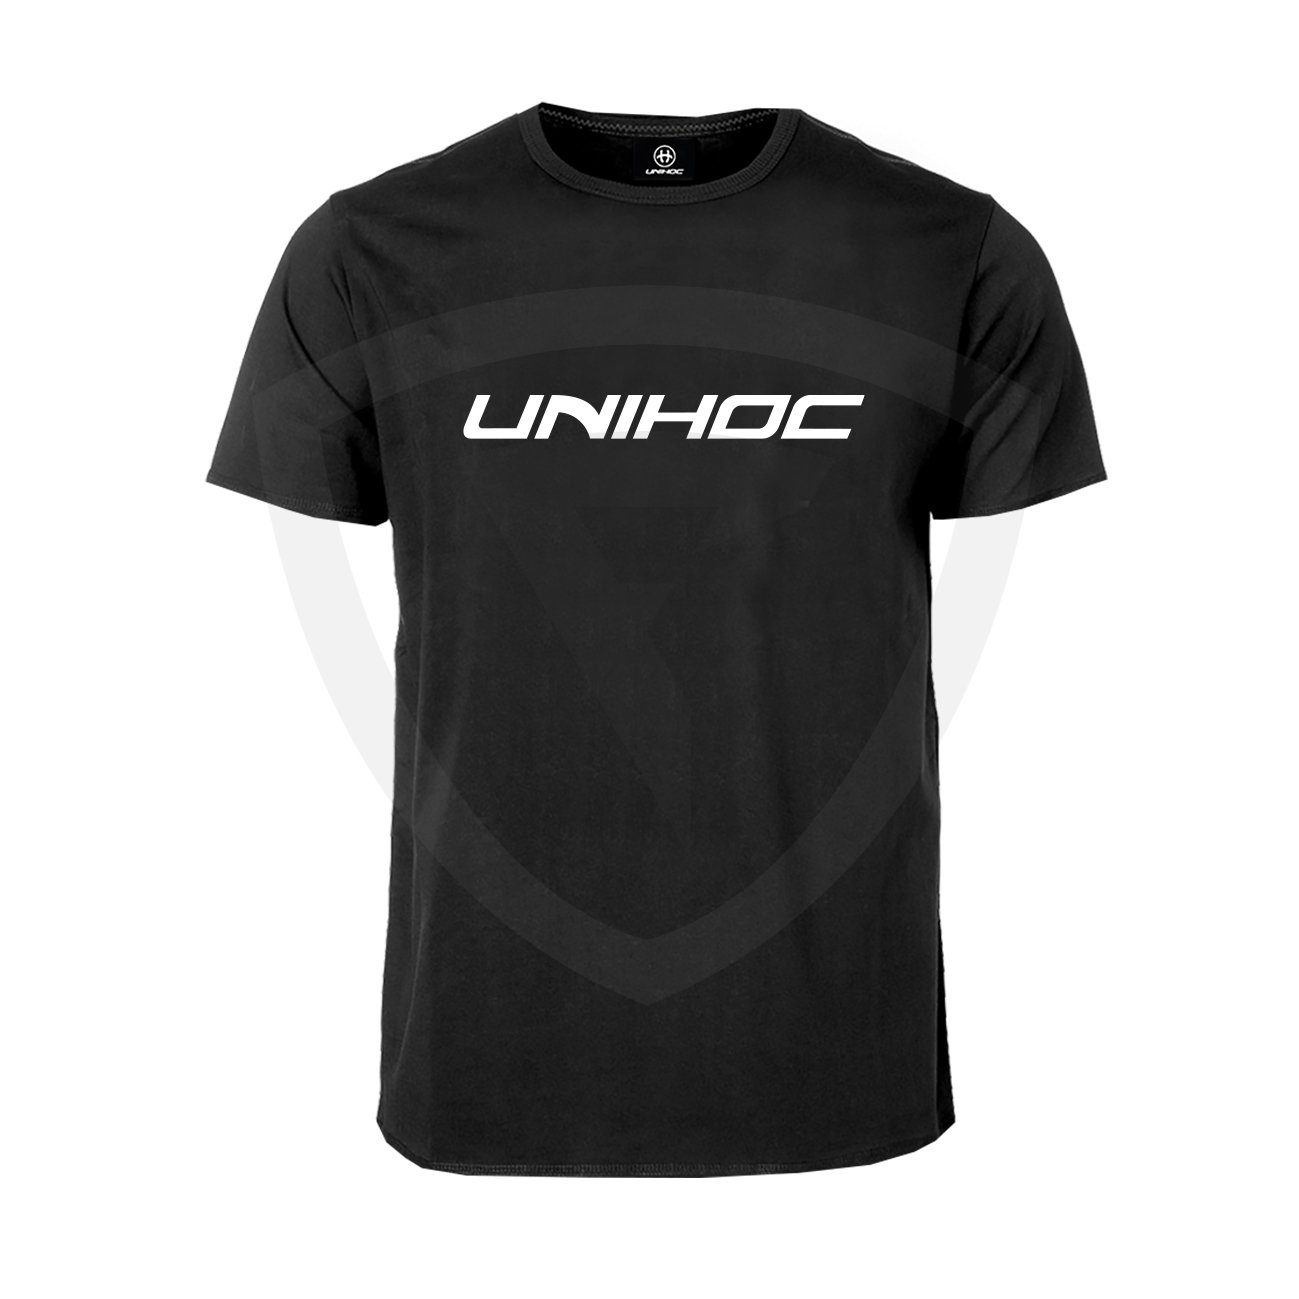 Unihoc T-shirt Classic Black JR 120 černá